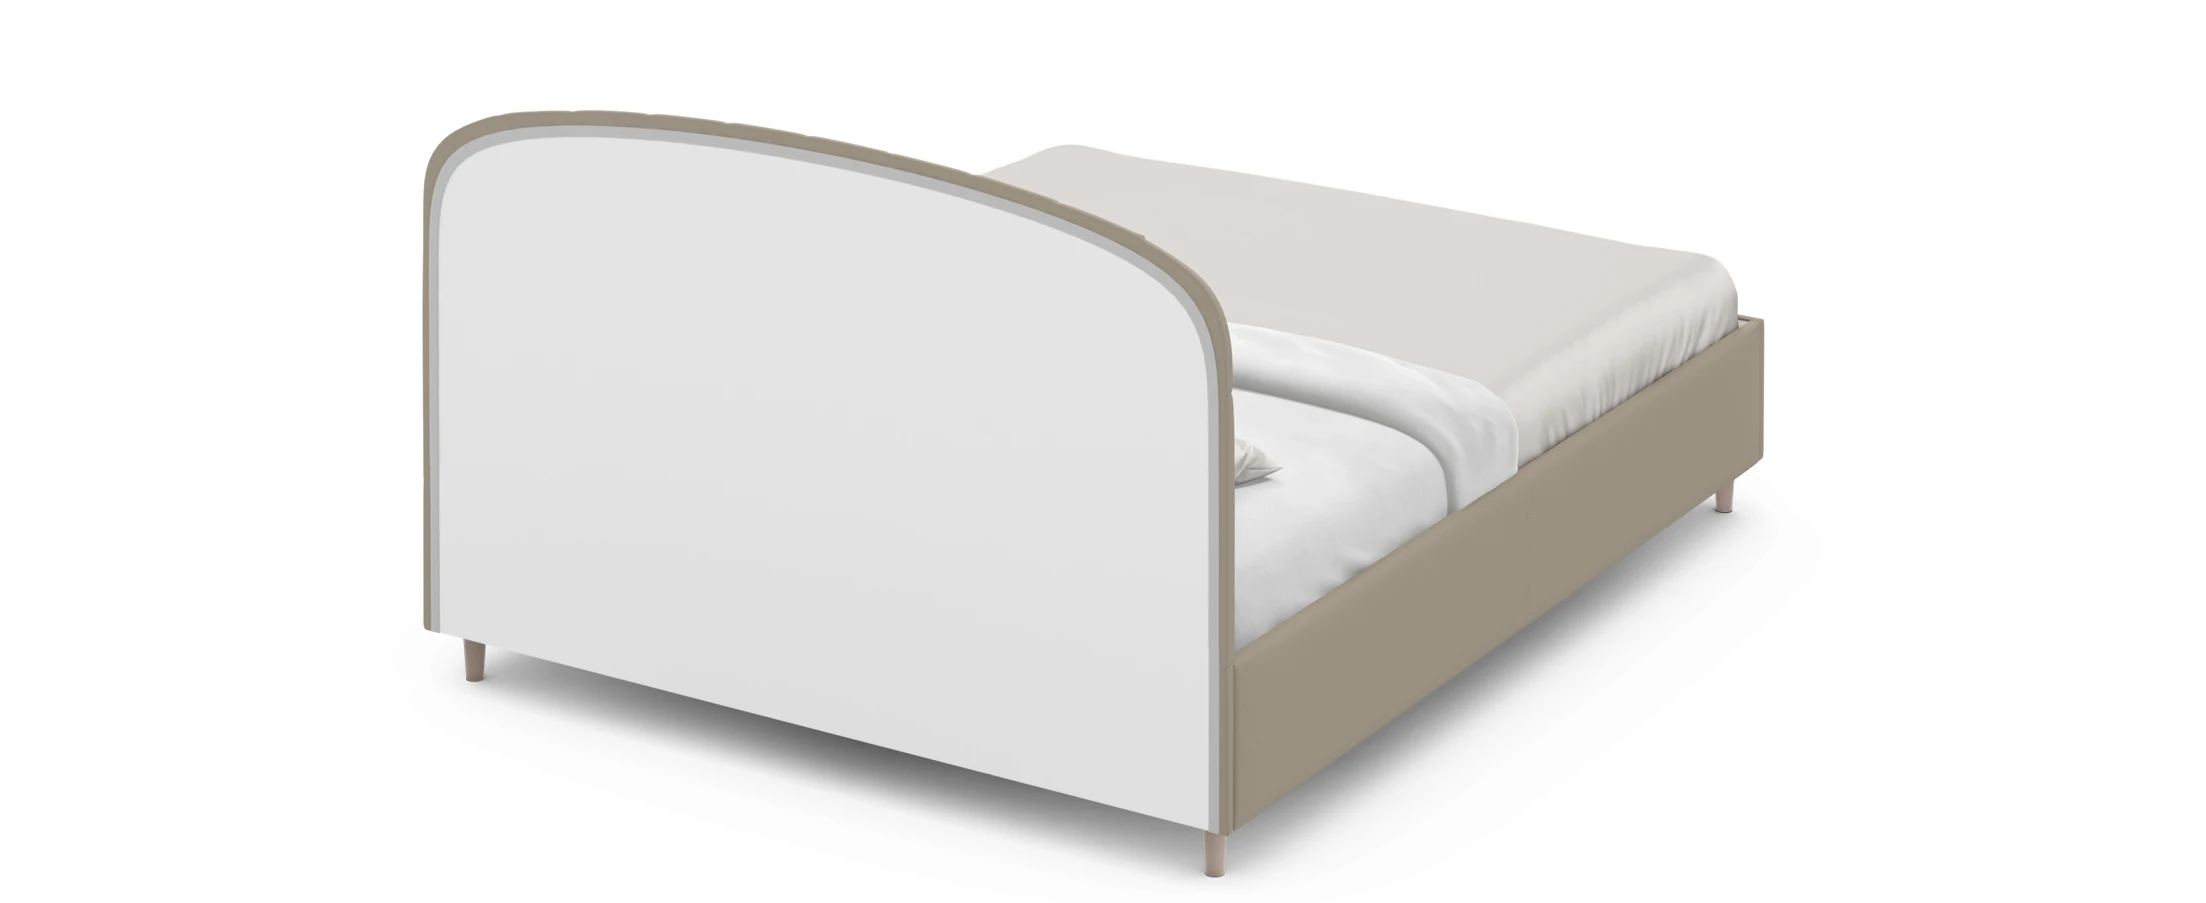 Кровать моон с подъемным механизмом 140х200